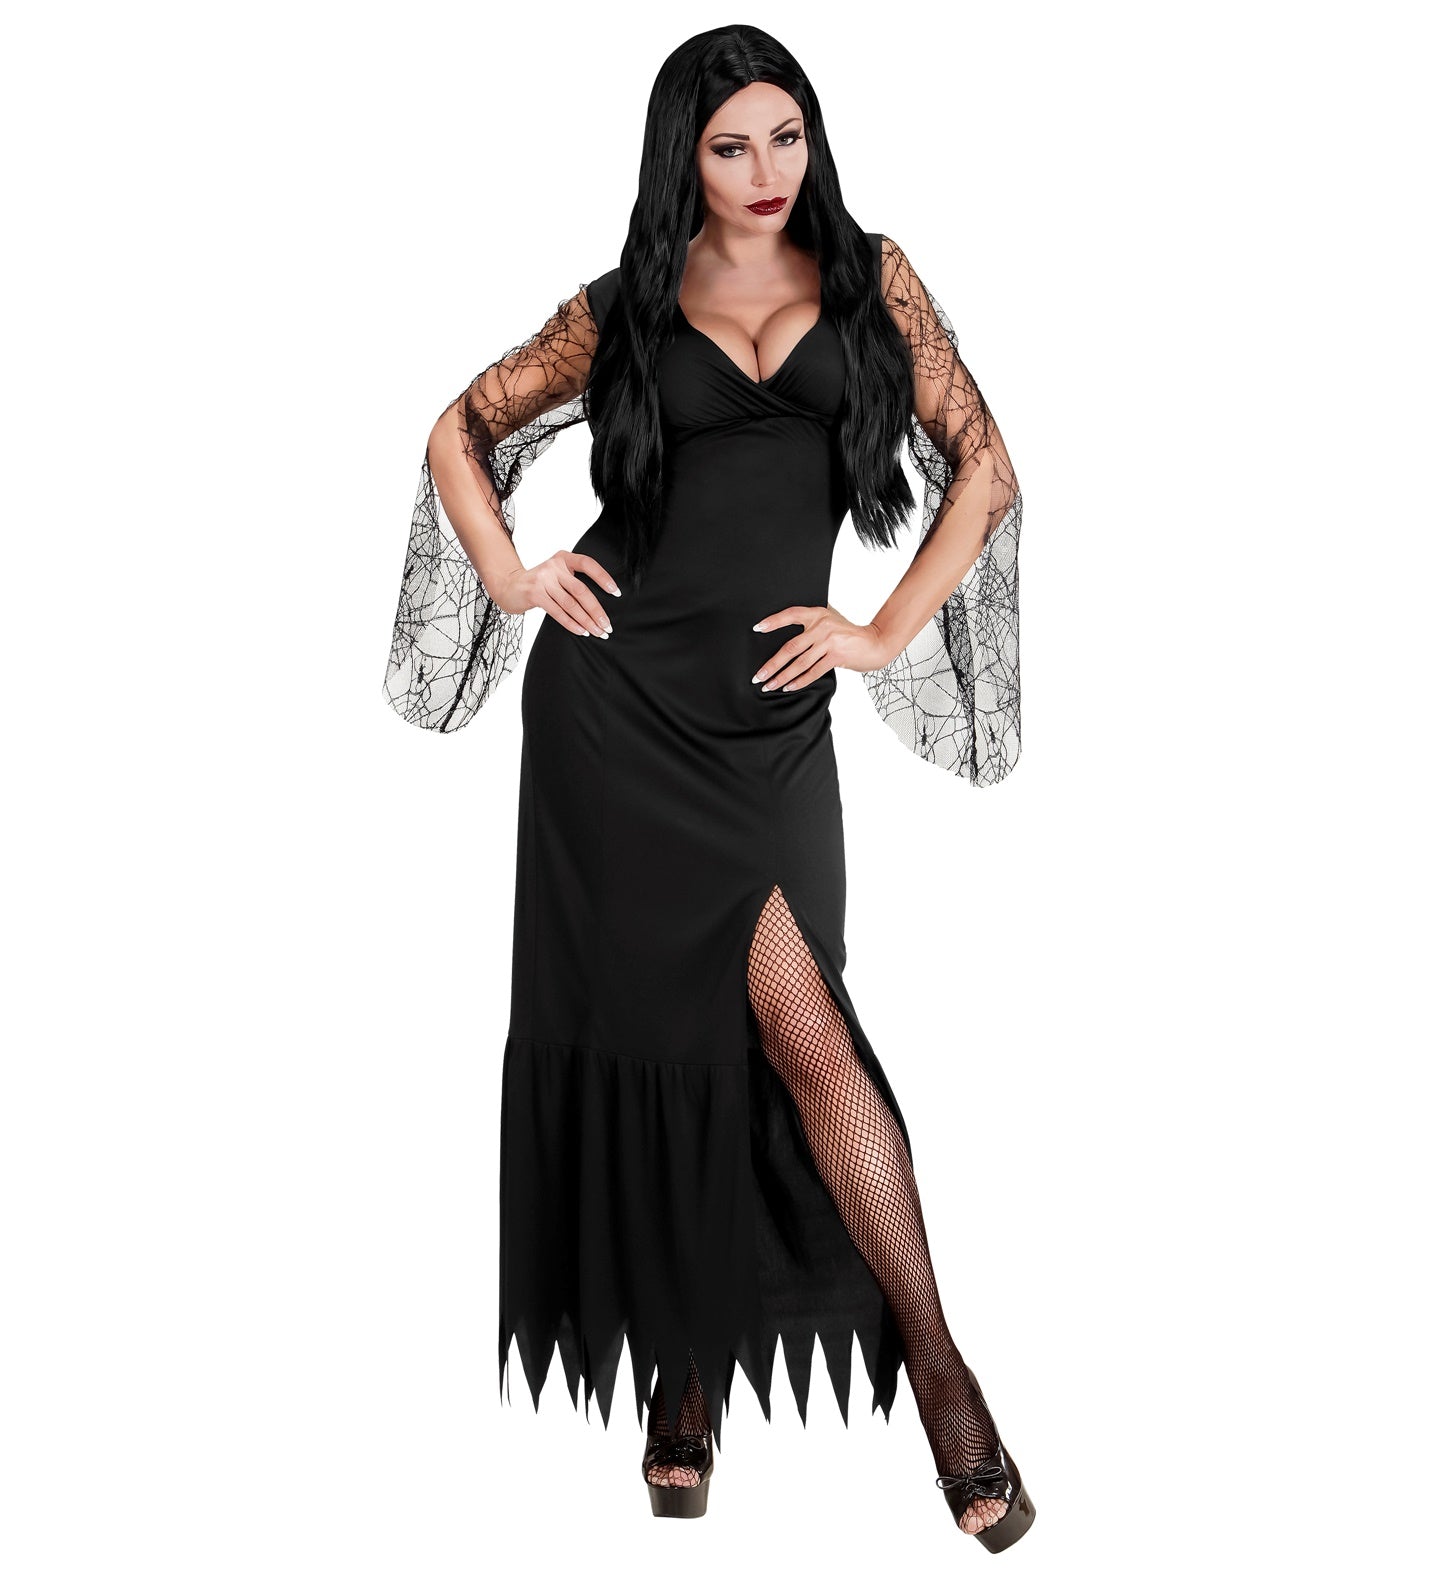 Dark Lady Morticia Costume